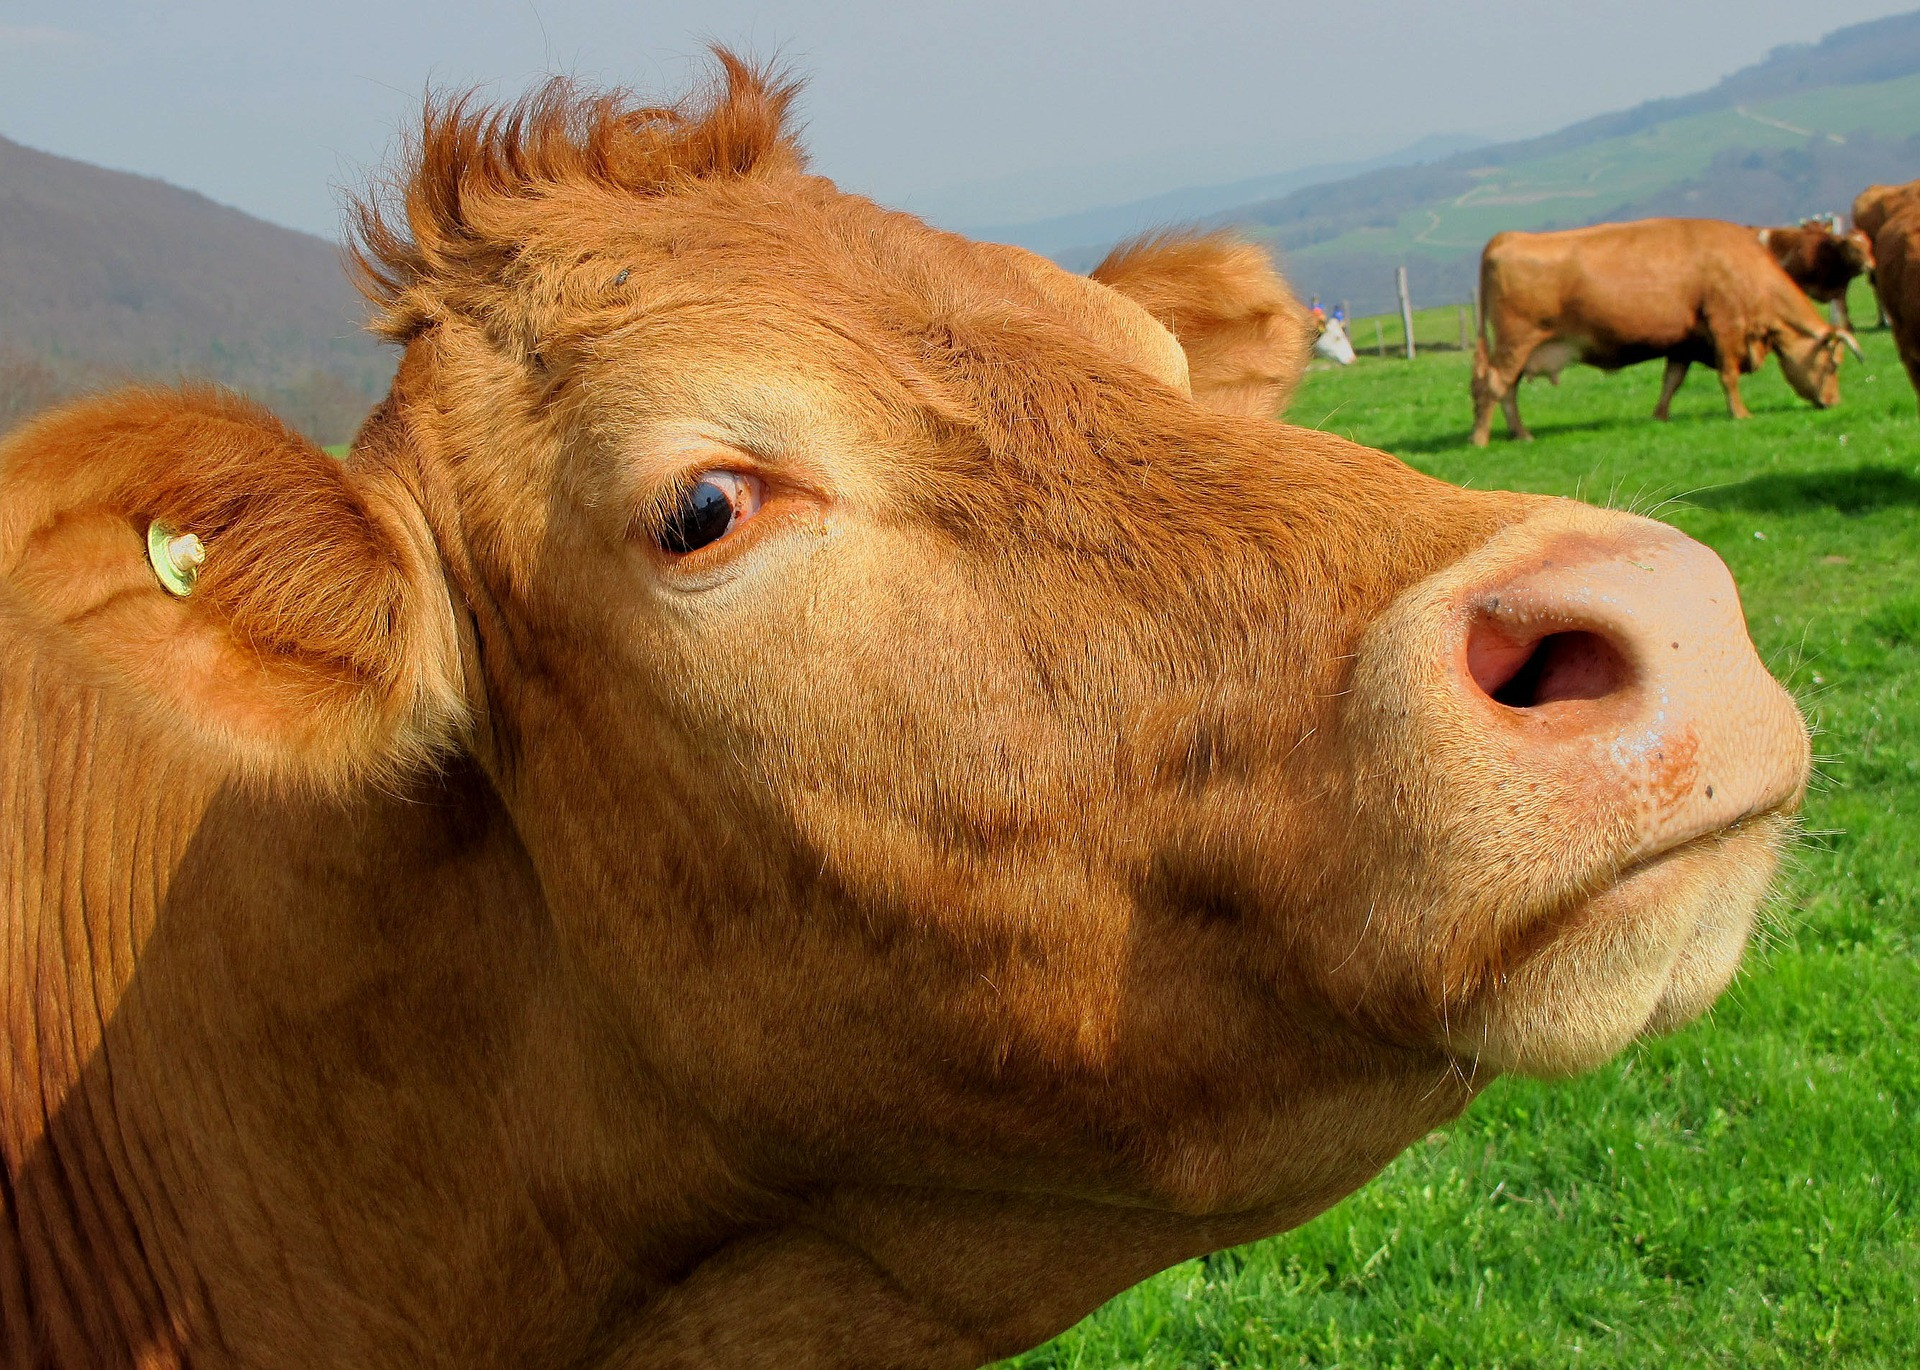 Pomocou aplikácie Google Earth vedci študovali tisíce obrázkov pasúcich sa kráv a objavili zvláštny vzorec. 70 percent kráv obráti hlavu na sever alebo na juh pri jedle alebo pití. Toto sa pozoruje na všetkých kontinentoch, bez ohľadu na terén, počasie a iné faktory.